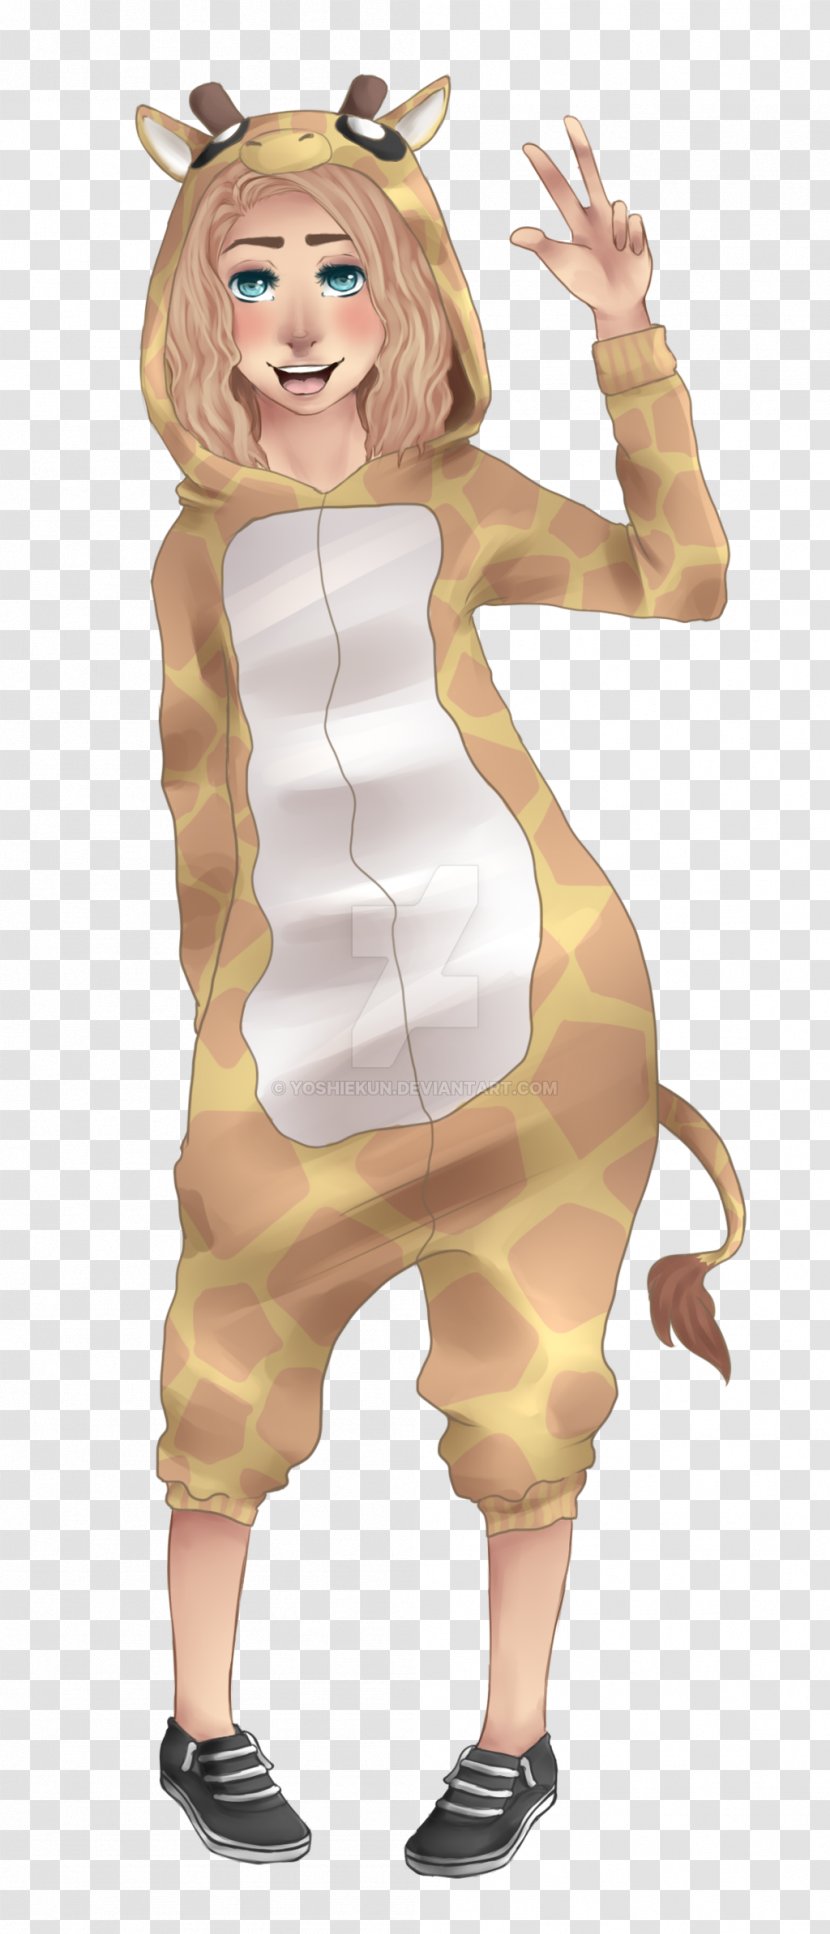 Giraffe Costume Cartoon Mascot - Heart Transparent PNG